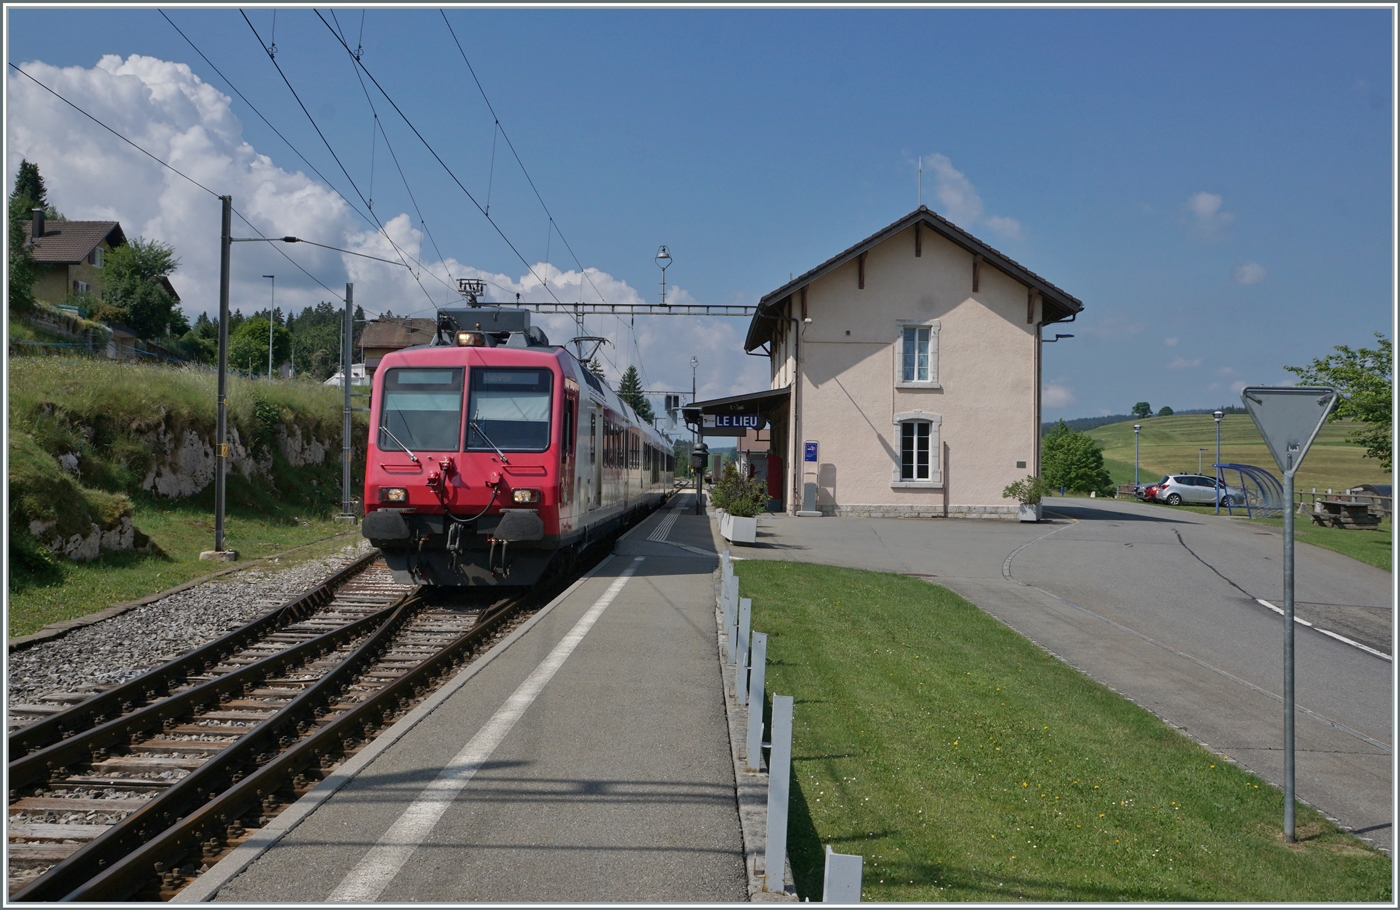 Der TRAVYS RBDe 560 384-0 (RBDe 560 DO TR 94 85 7560 384-0 CH-TVYS)  Lac de Brenet  hat als Regionalzug 6016 Le Lieu erreicht und fährt nach einem kurzen Halt weiter nach Vallorbe. Der kleine Bahnhof von Le Lieu vermittelt noch ein Ambiente wie sie vor 20 - 30 Jahren auf vielen Nebenbahnstationen vorzufinden war. 16. Juni 2022